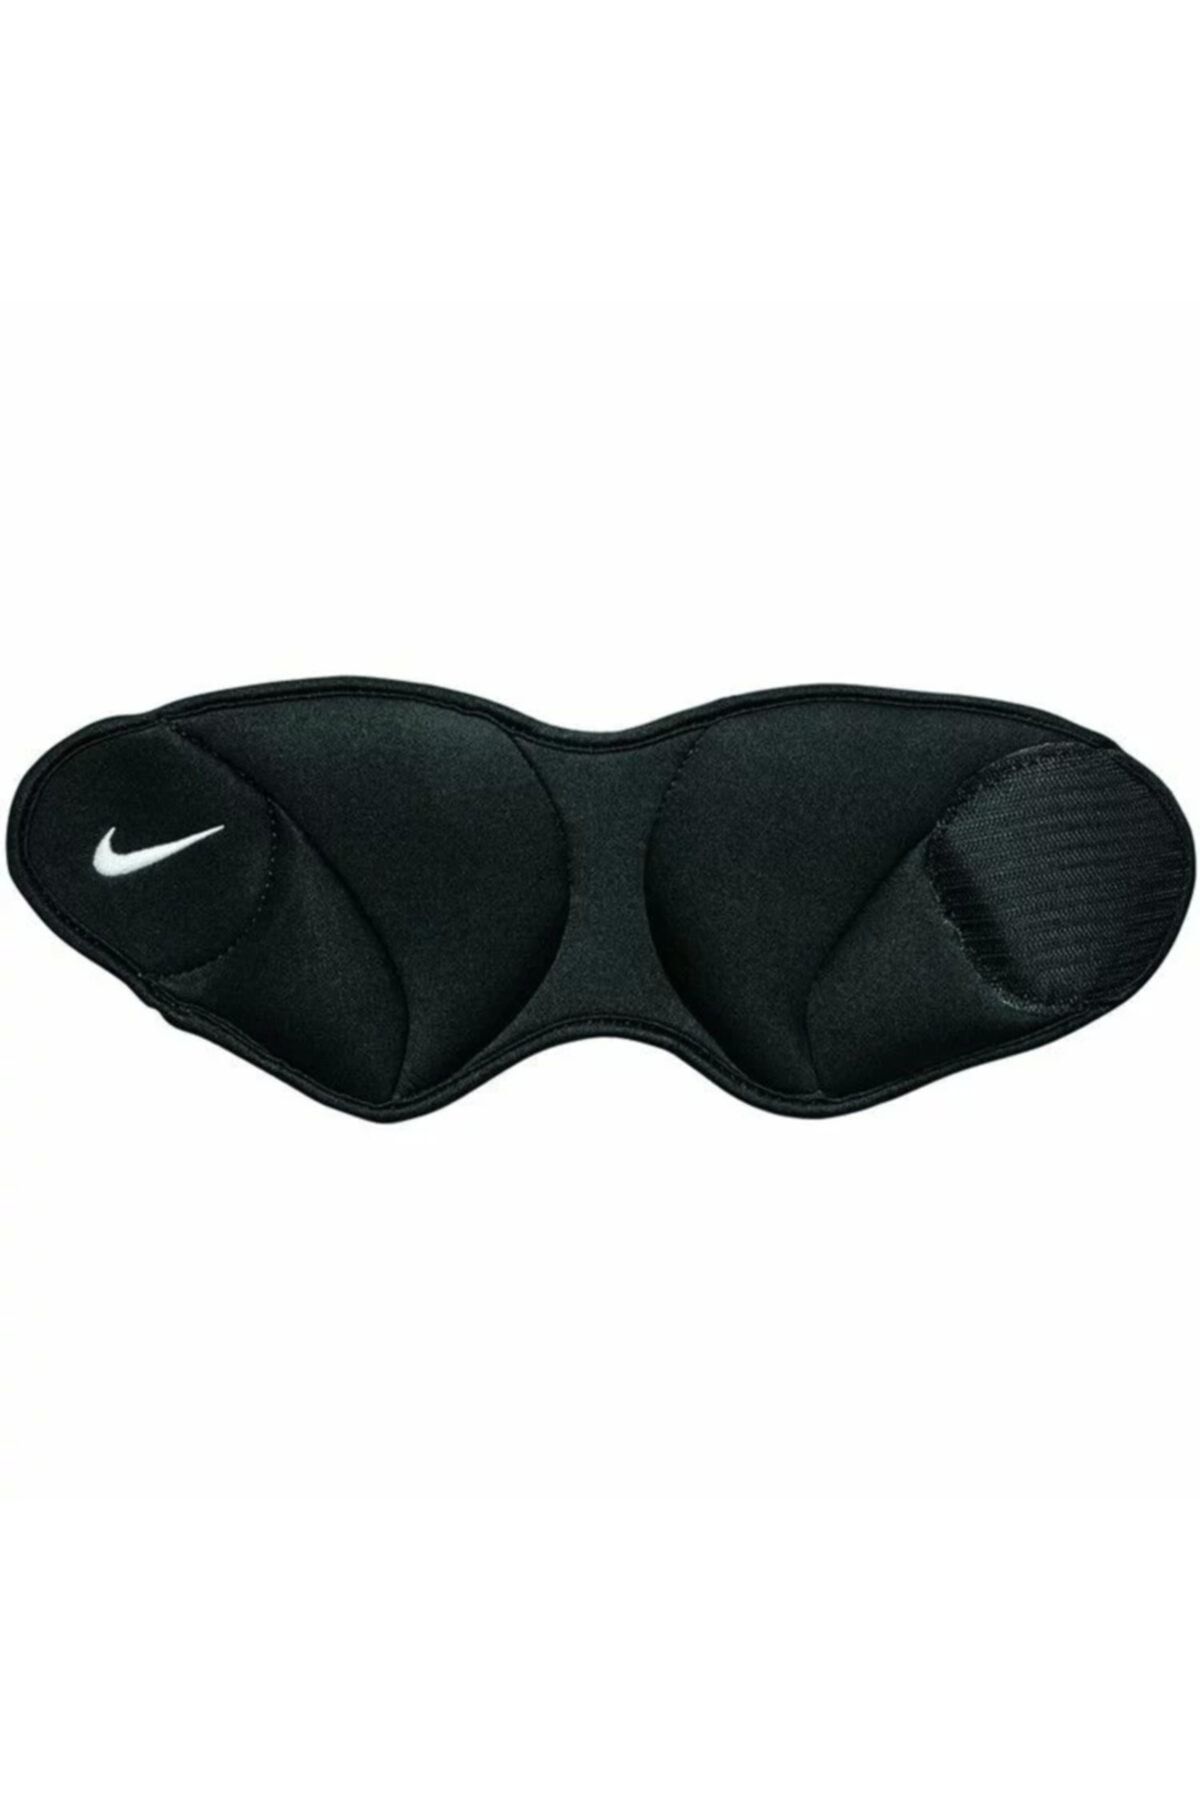 Nike Ankle Weıghts Spor Ayak Bilekliği